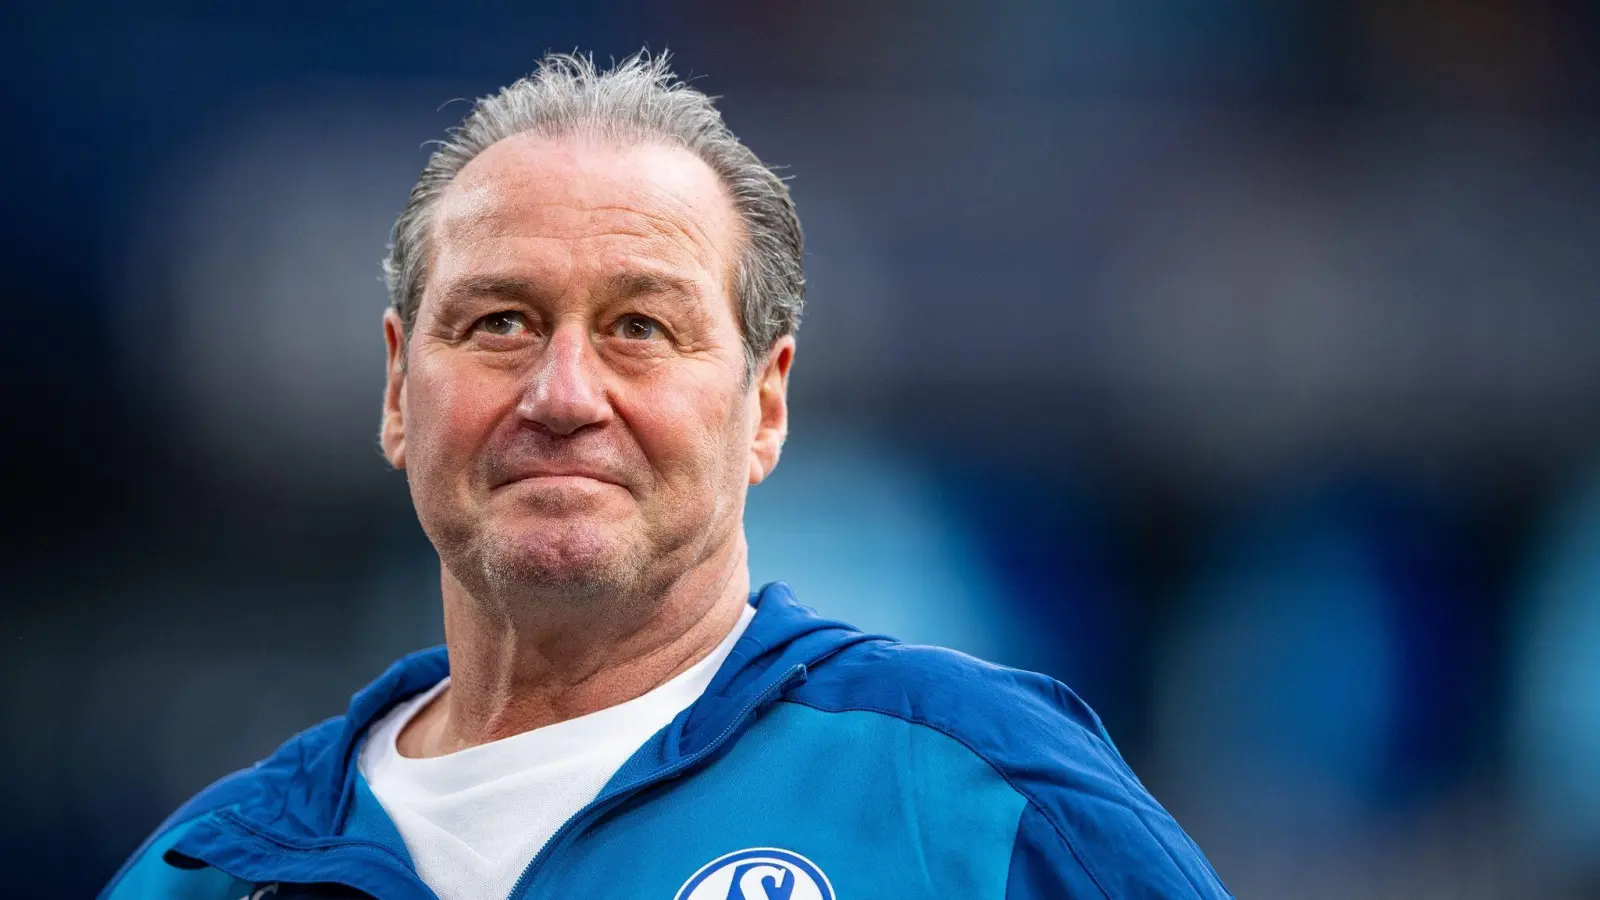 Der ehemalige Schalke-Trainer Huub Stevens ordnet die aktuelle Krise des Clubs ein. (Foto: Guido Kirchner/dpa)